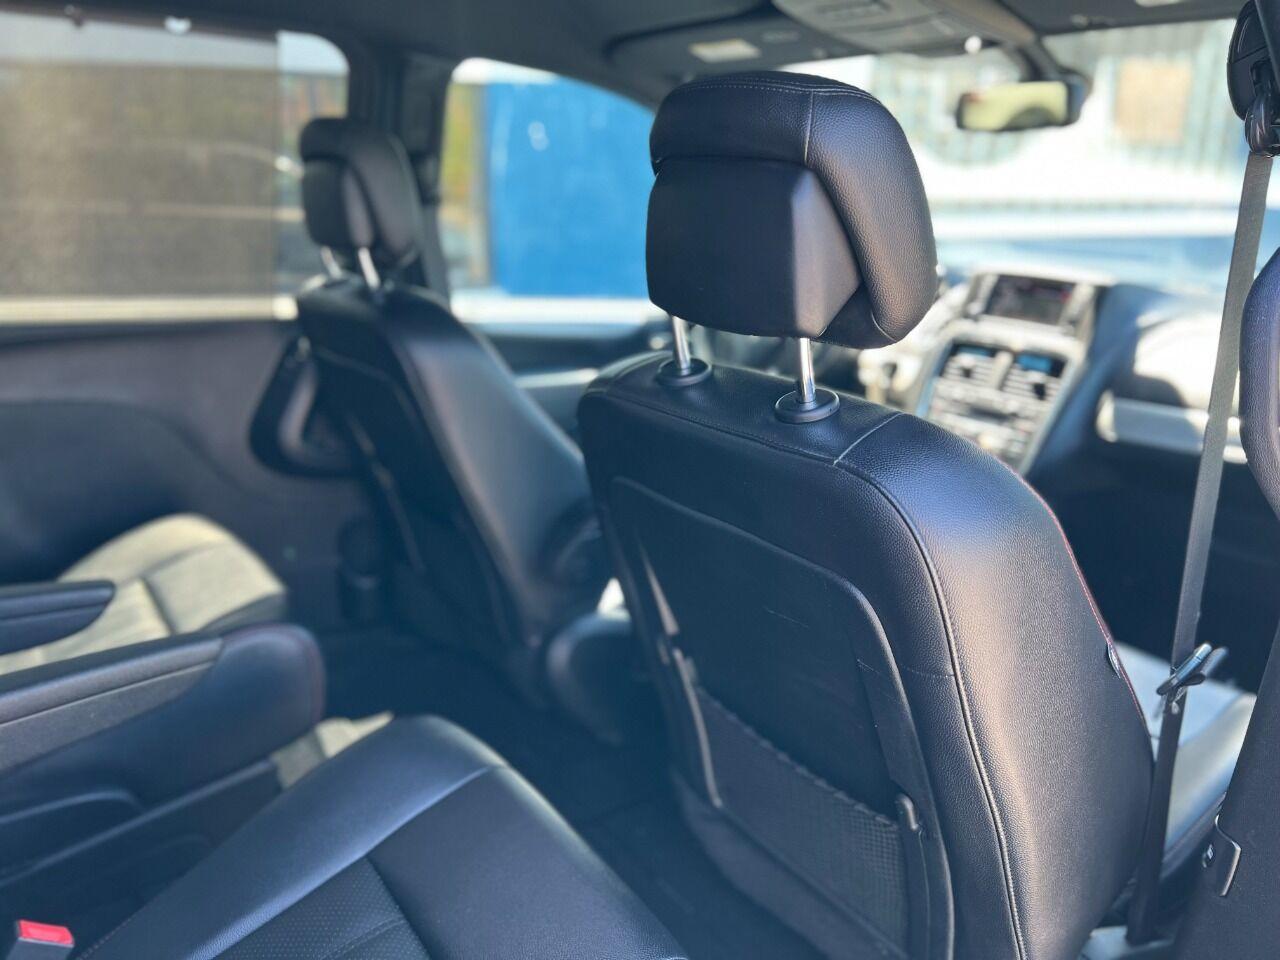 2018 Dodge Grand Caravan GT 4dr Mini Van